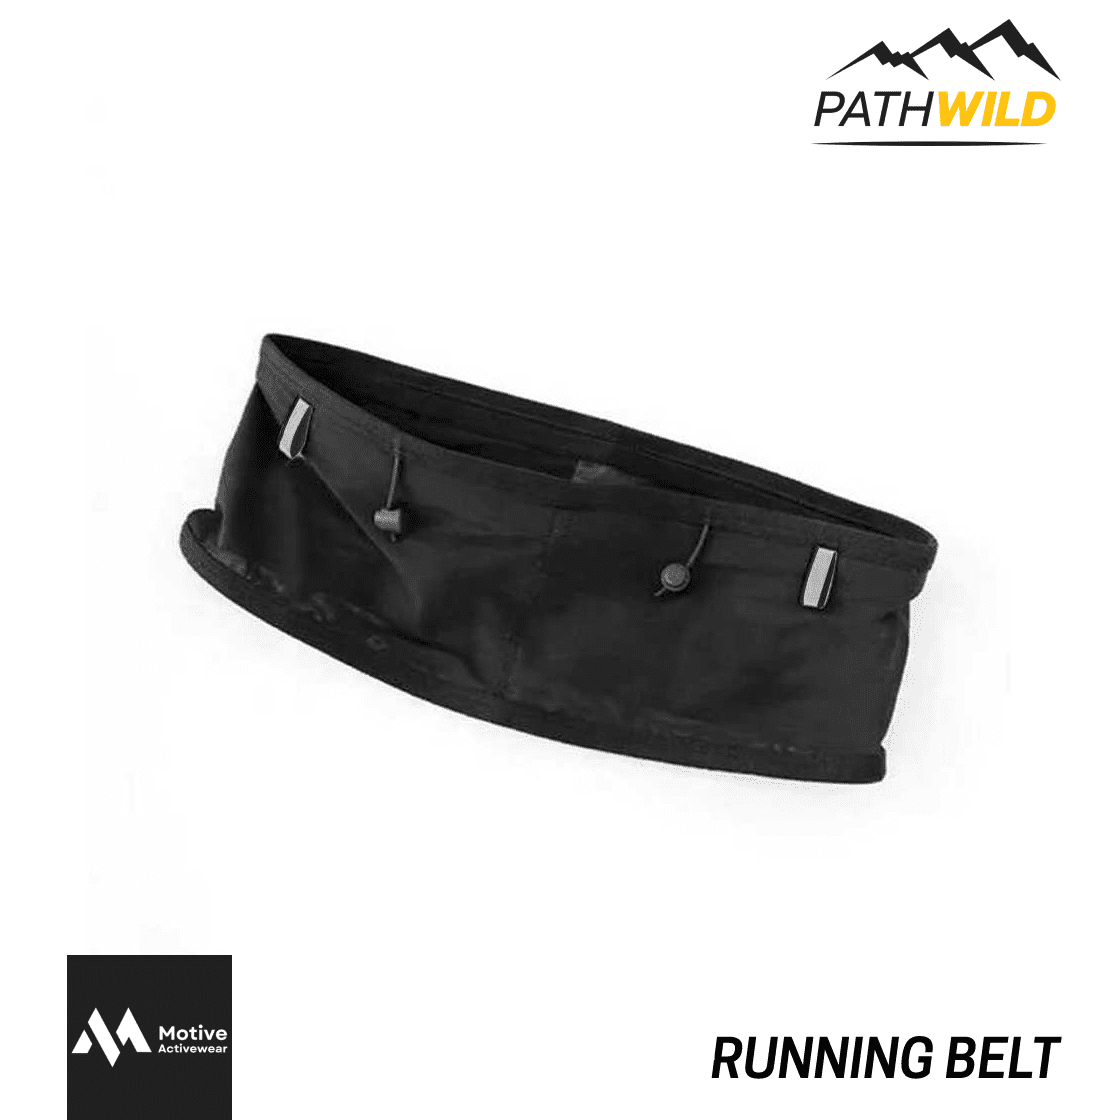 กระเป๋าคาดเอวแบบสวม Running belt Motive กระเป๋าคาดเอว สายคาดเอว กระเป๋าคาดเอวใส่ขวดน้ำนิ่ม สายคาดเอววิ่ง PATHWILD